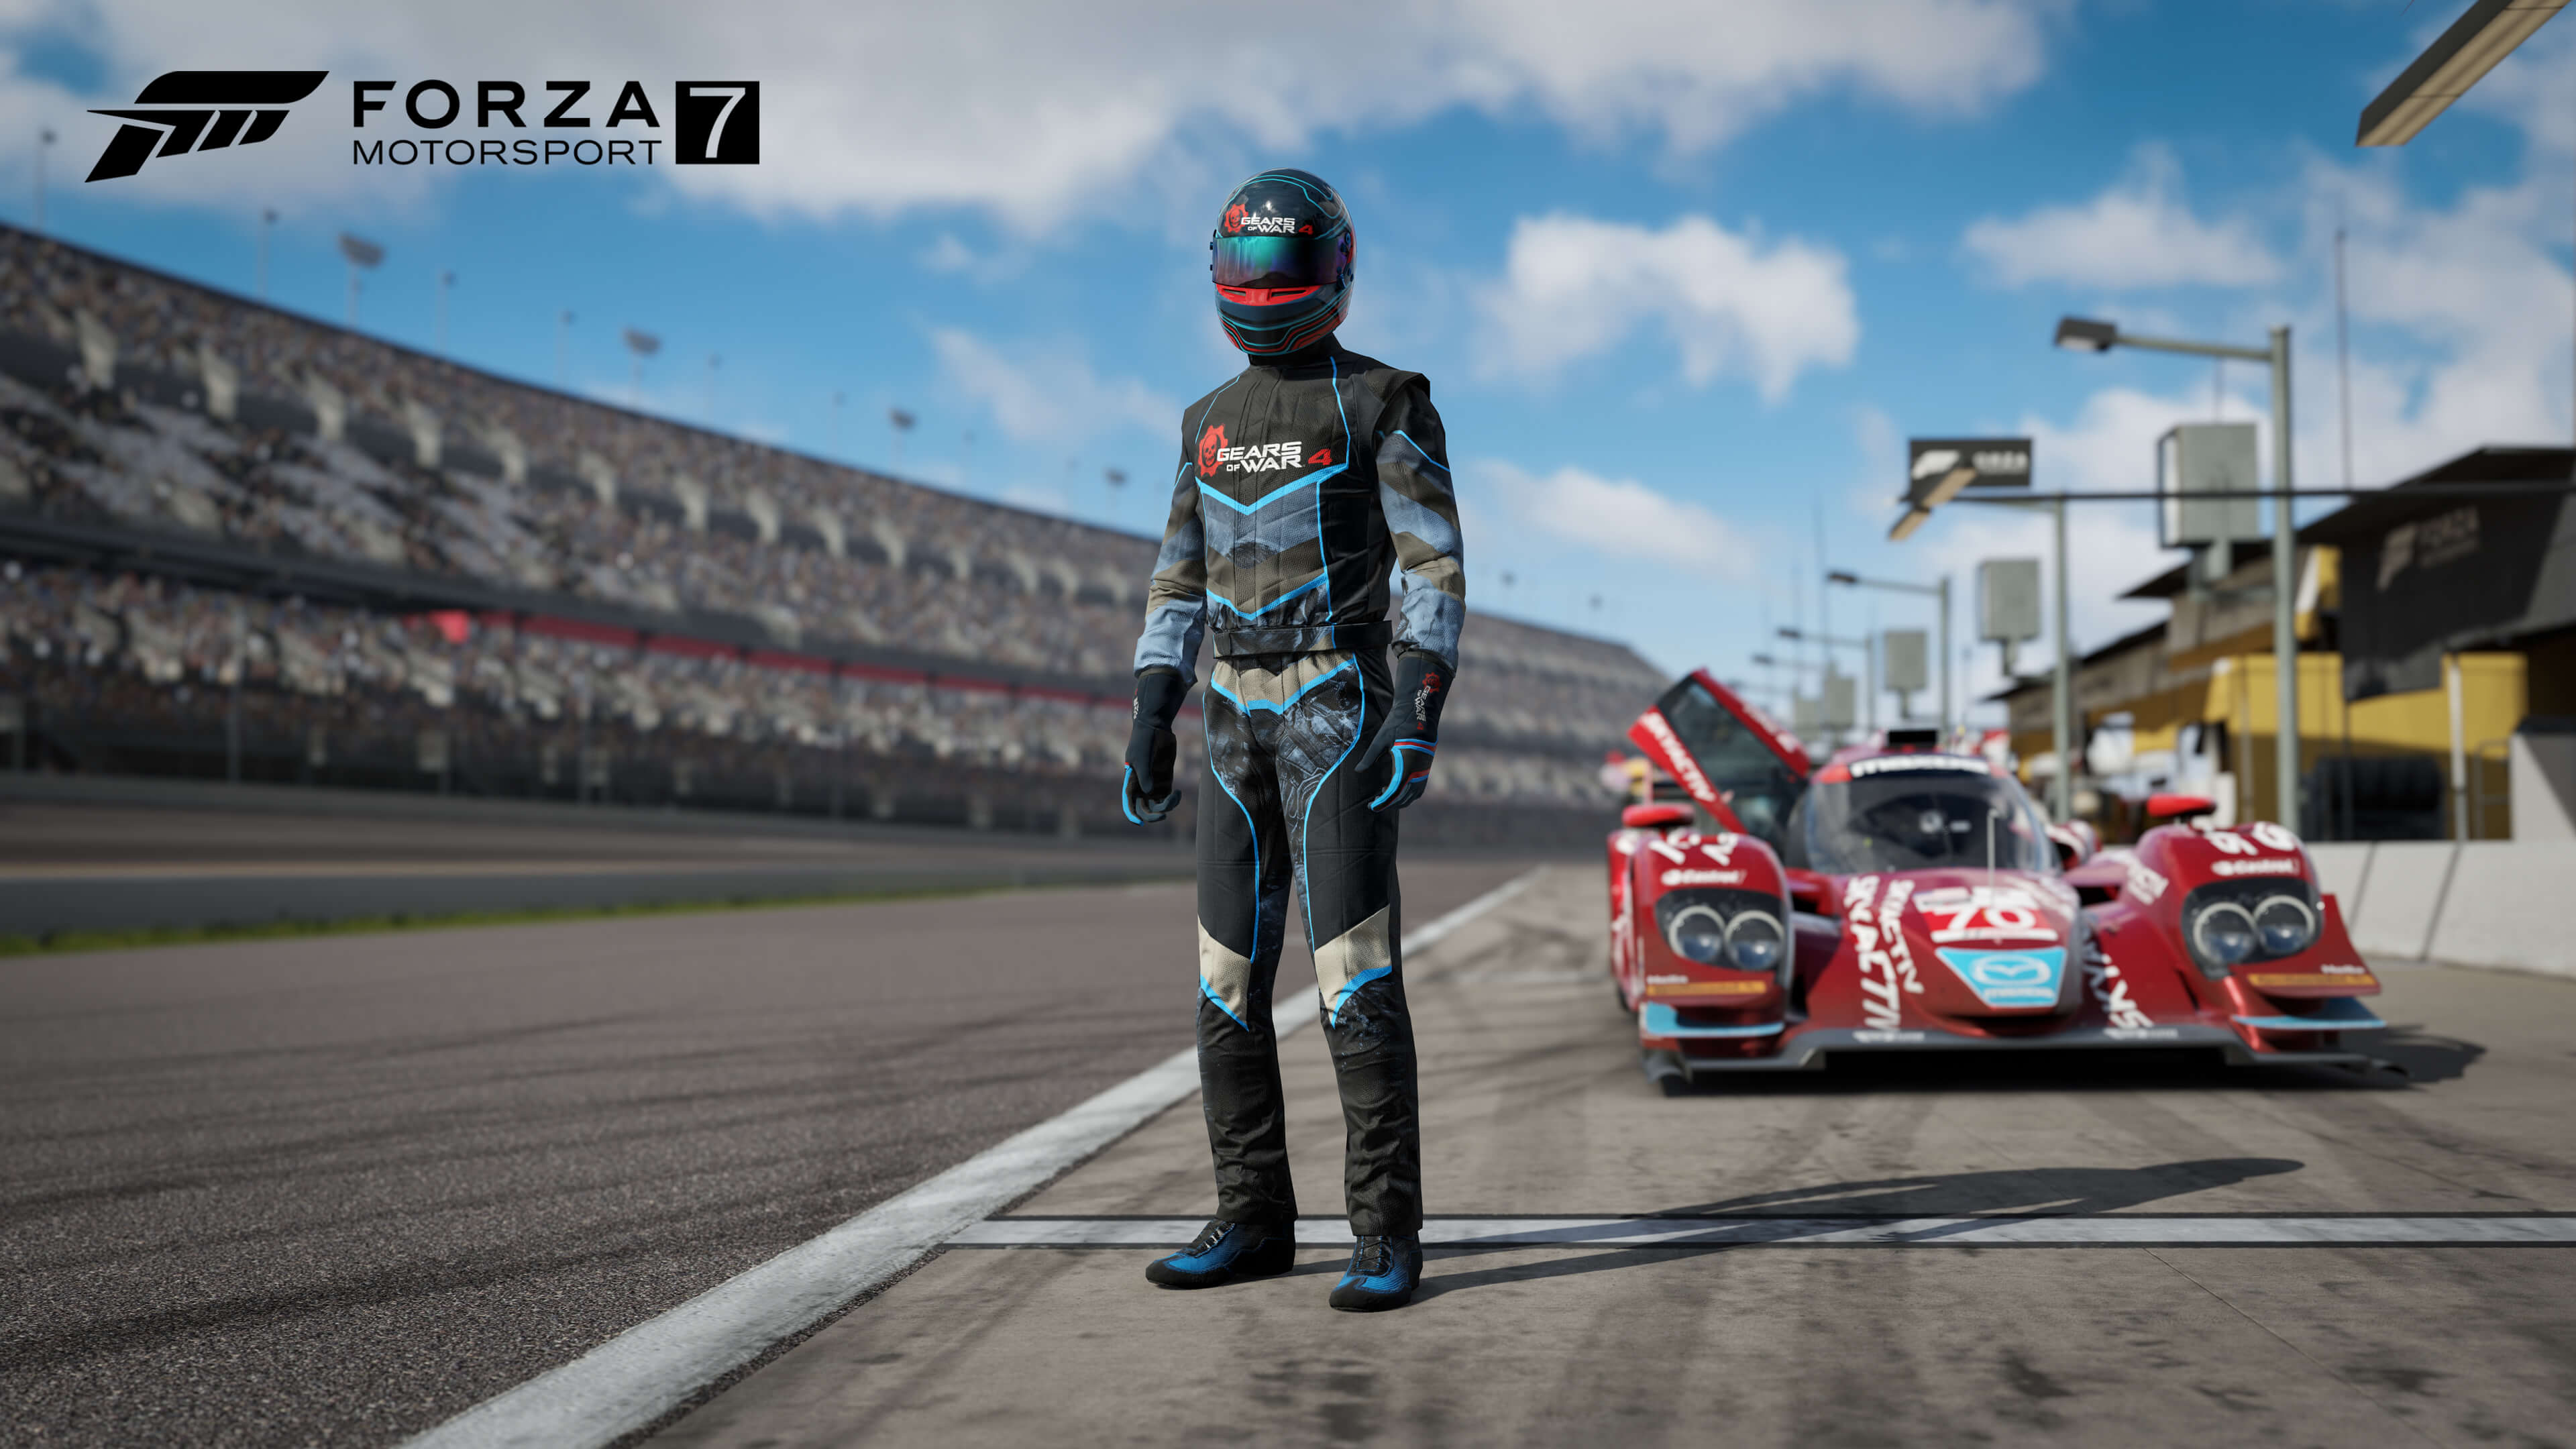 Roupas para Forza Motosport 7 inspirados em Gears of War